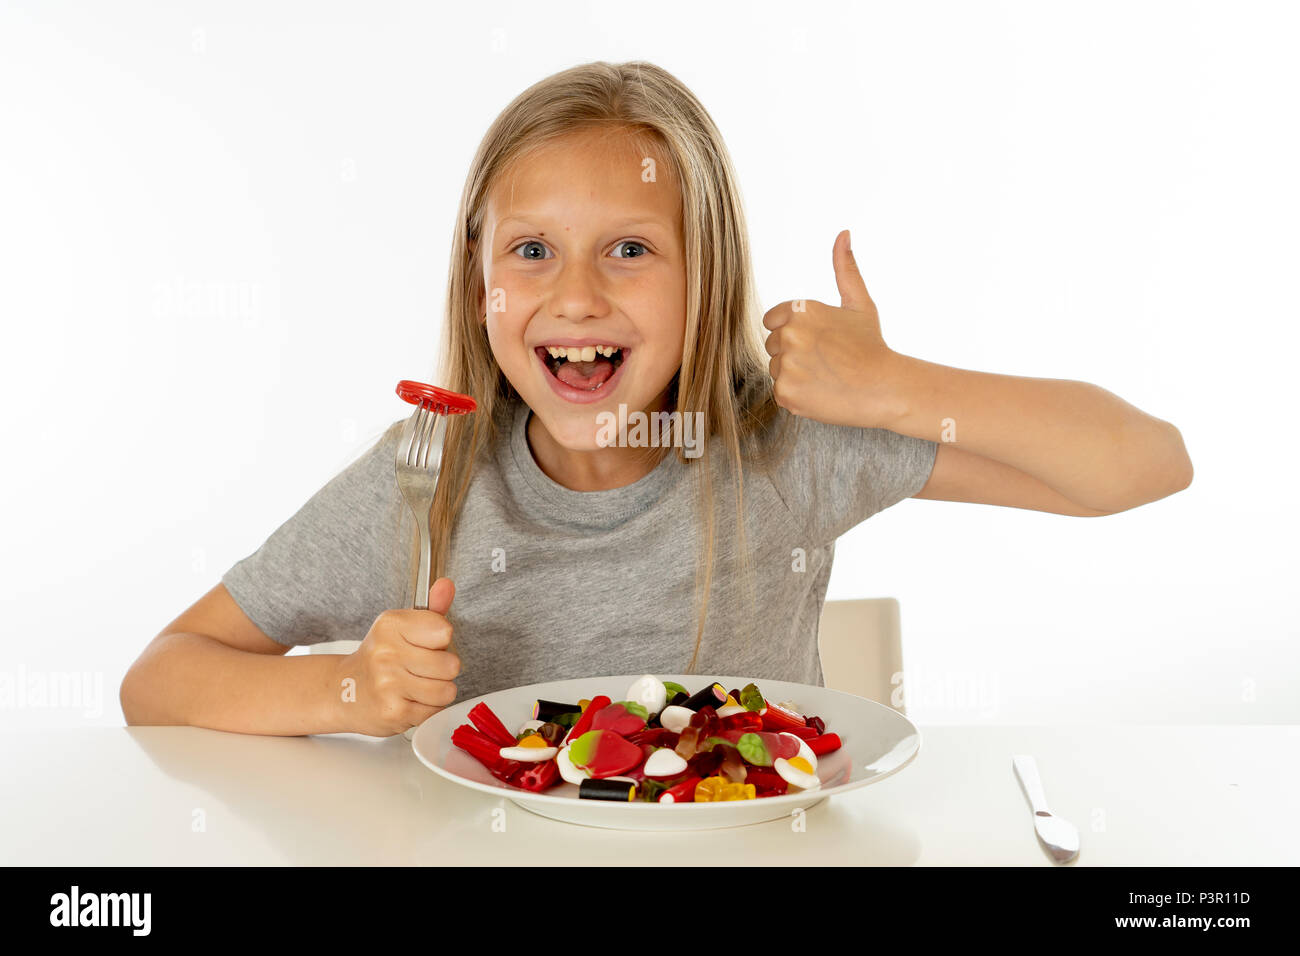 Funny Girl felice con la piastra di candy lollipop lollies felice bambina mangiare grandi zucchero candito lollies kid mangiare dolci. bambino sorpreso con la caramella. iso Foto Stock